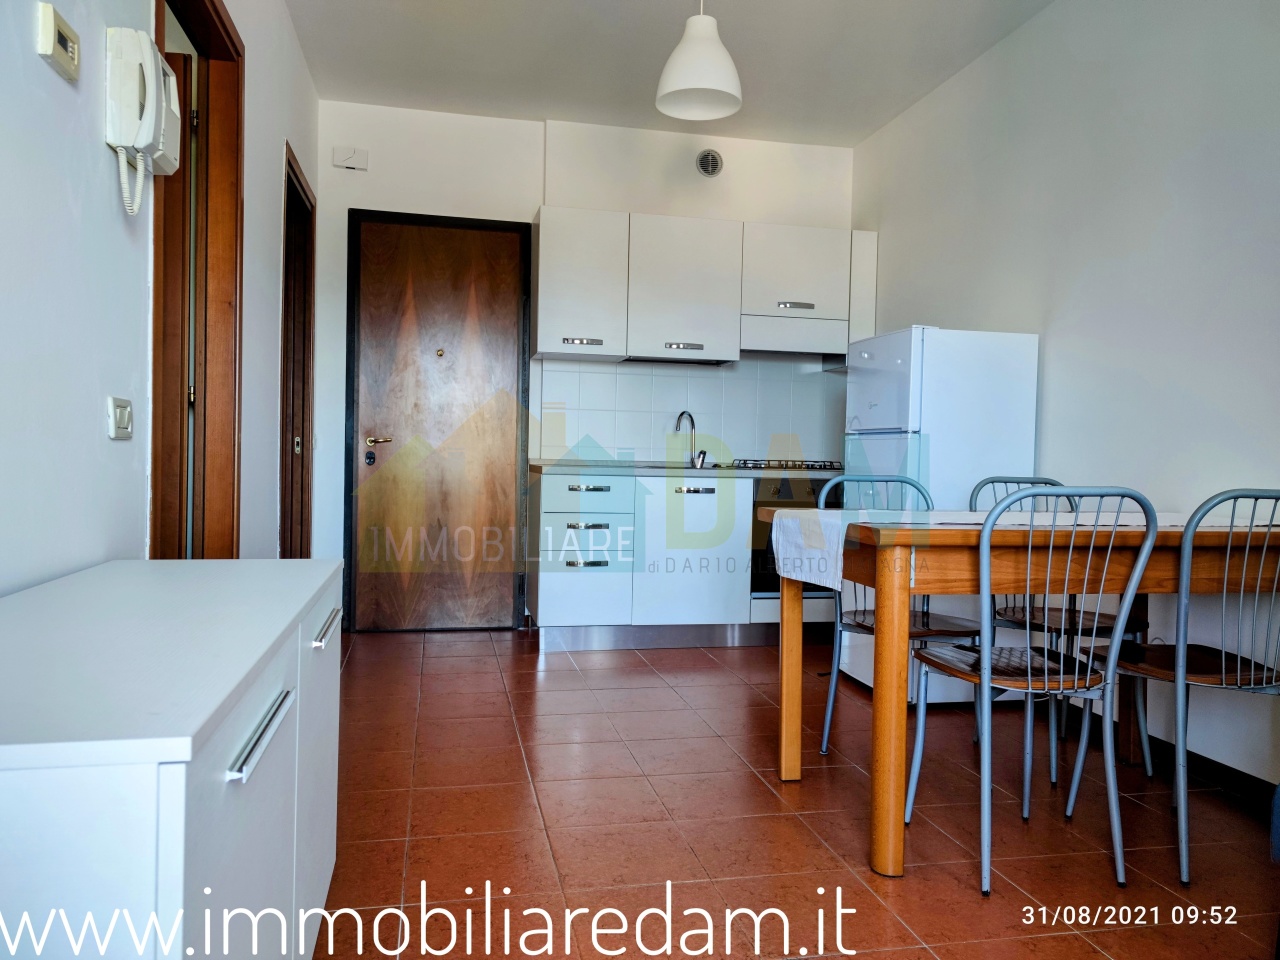 Appartamento in vendita a Vicenza, 3 locali, prezzo € 55.000 | PortaleAgenzieImmobiliari.it